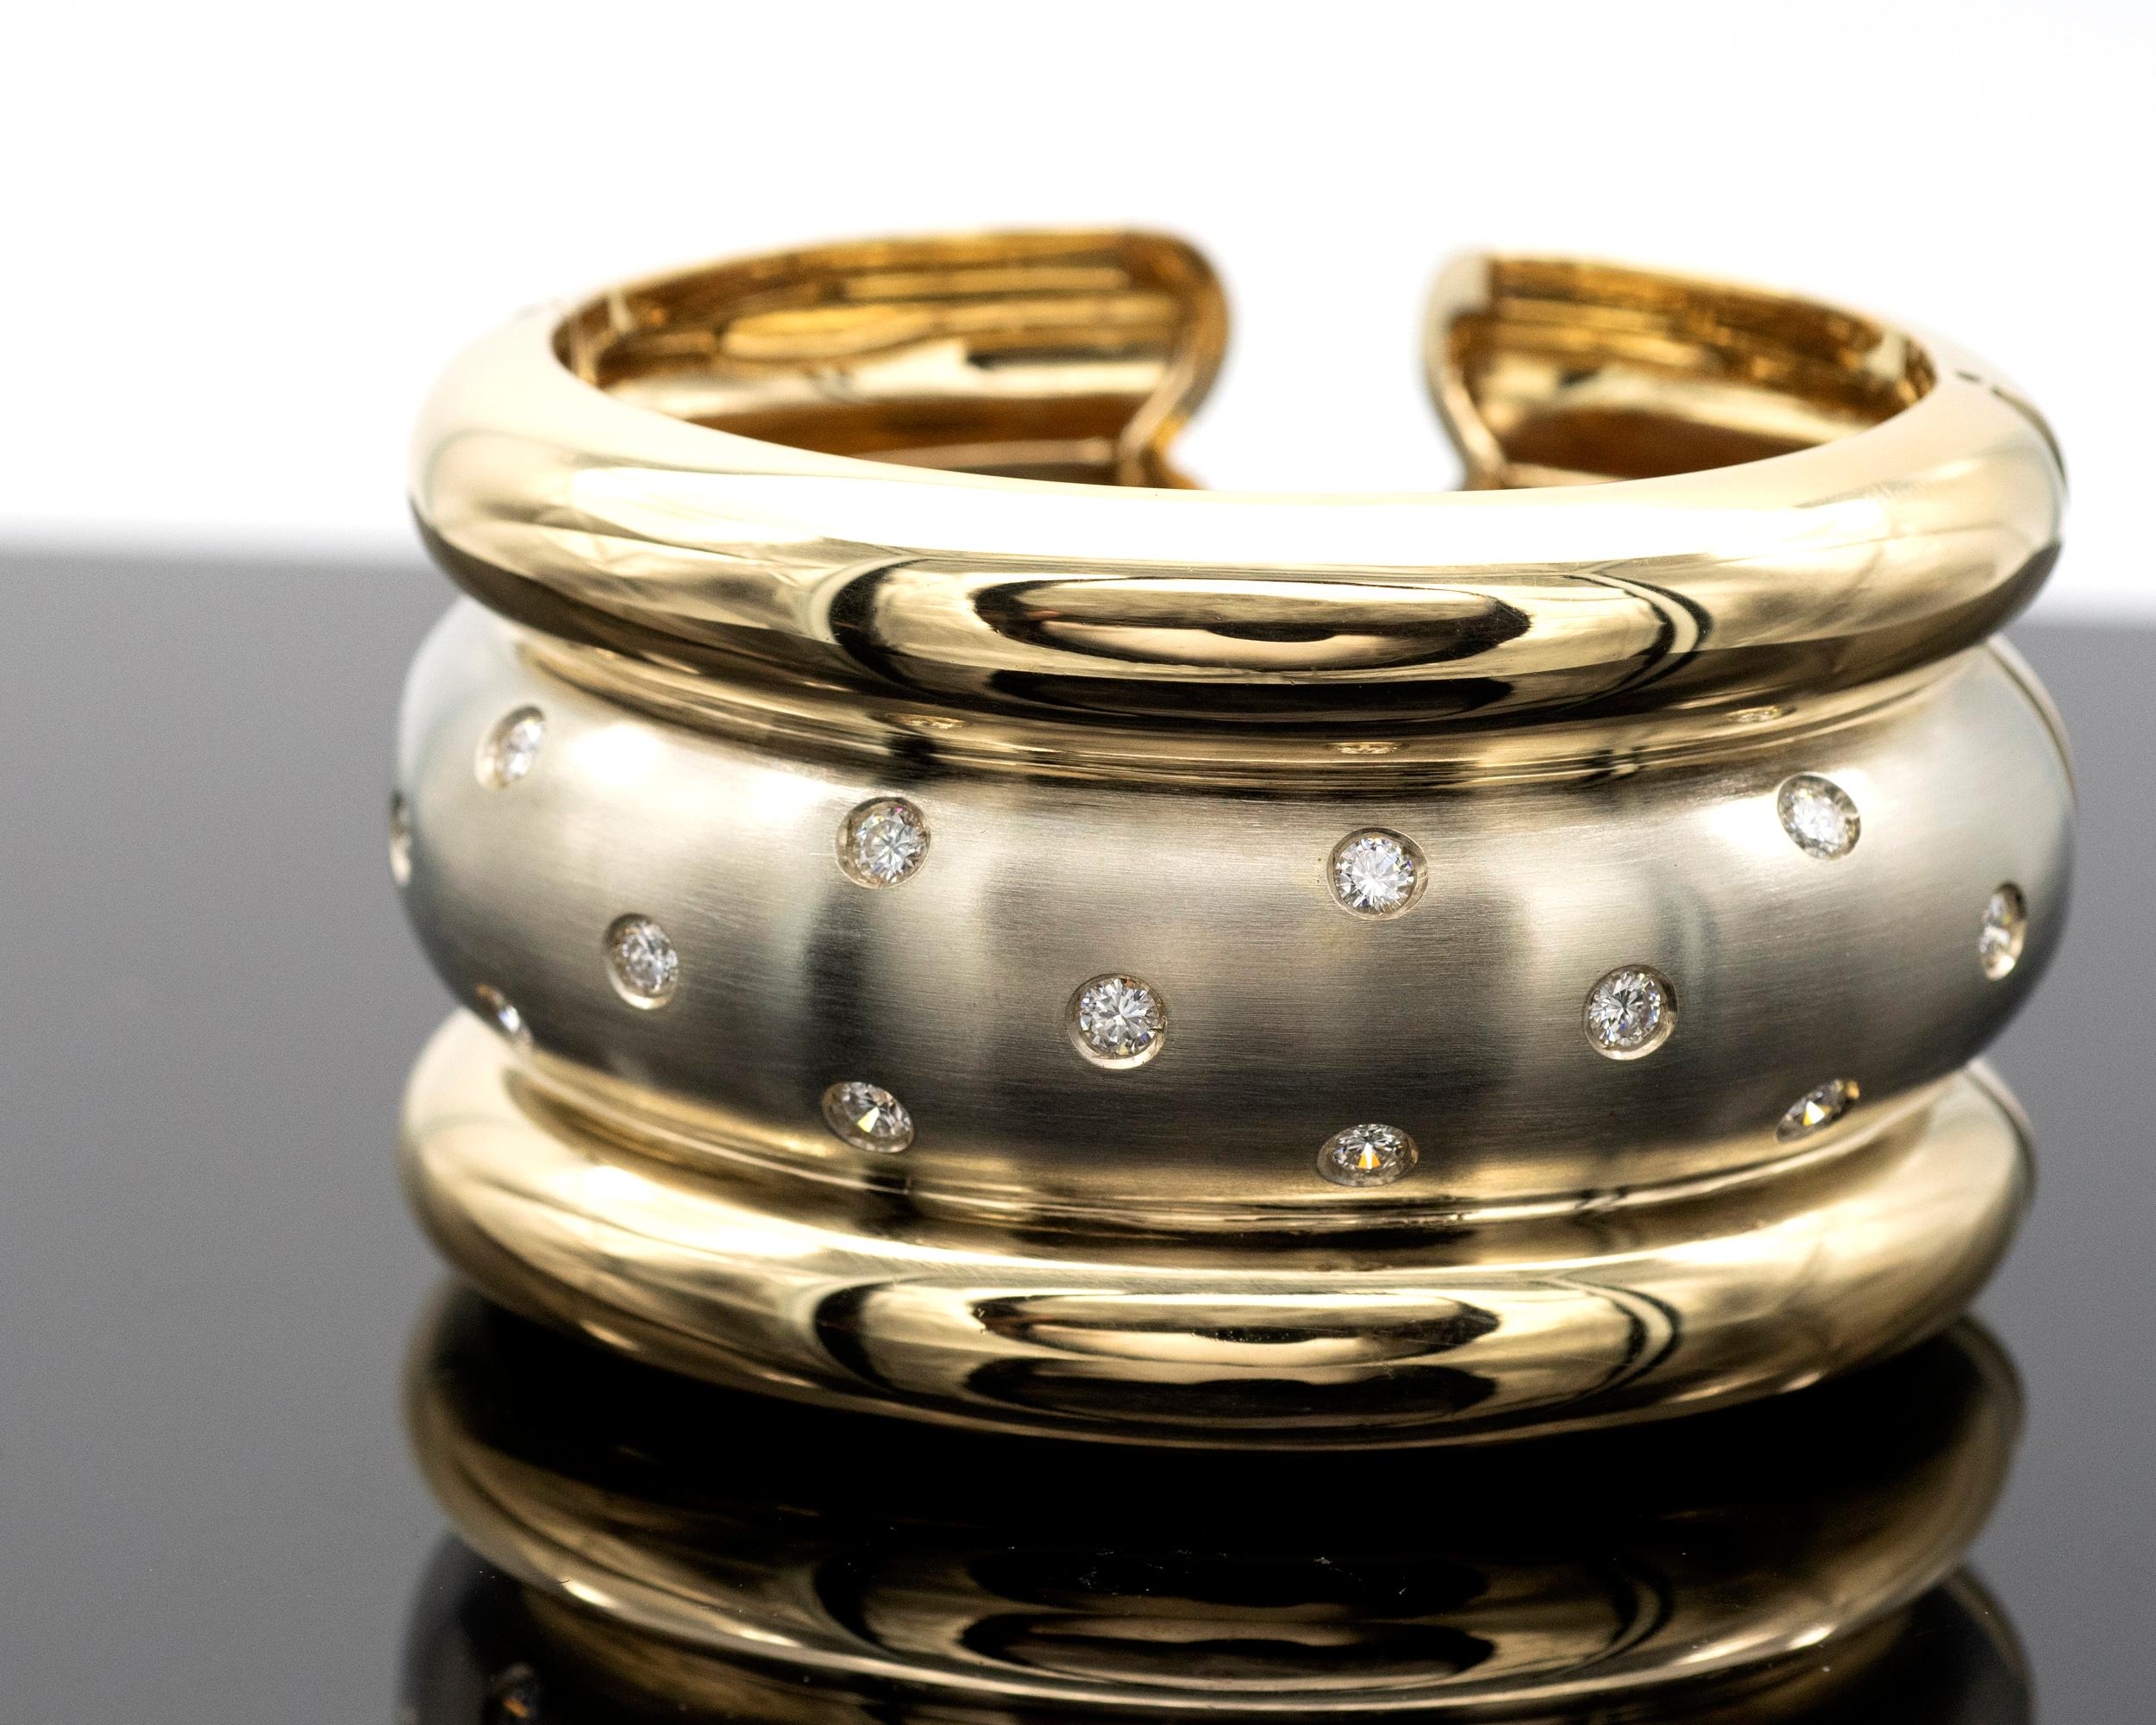 Wunderschönes modernes zweifarbiges Manschettenarmband. Der mittlere Teil besteht aus satiniertem Weißgold, das mit Diamanten besetzt ist, und wird von zwei glänzenden Gelbgoldbändern umrahmt. Der daraus resultierende Kontrast ist sehr elegant. 
Die